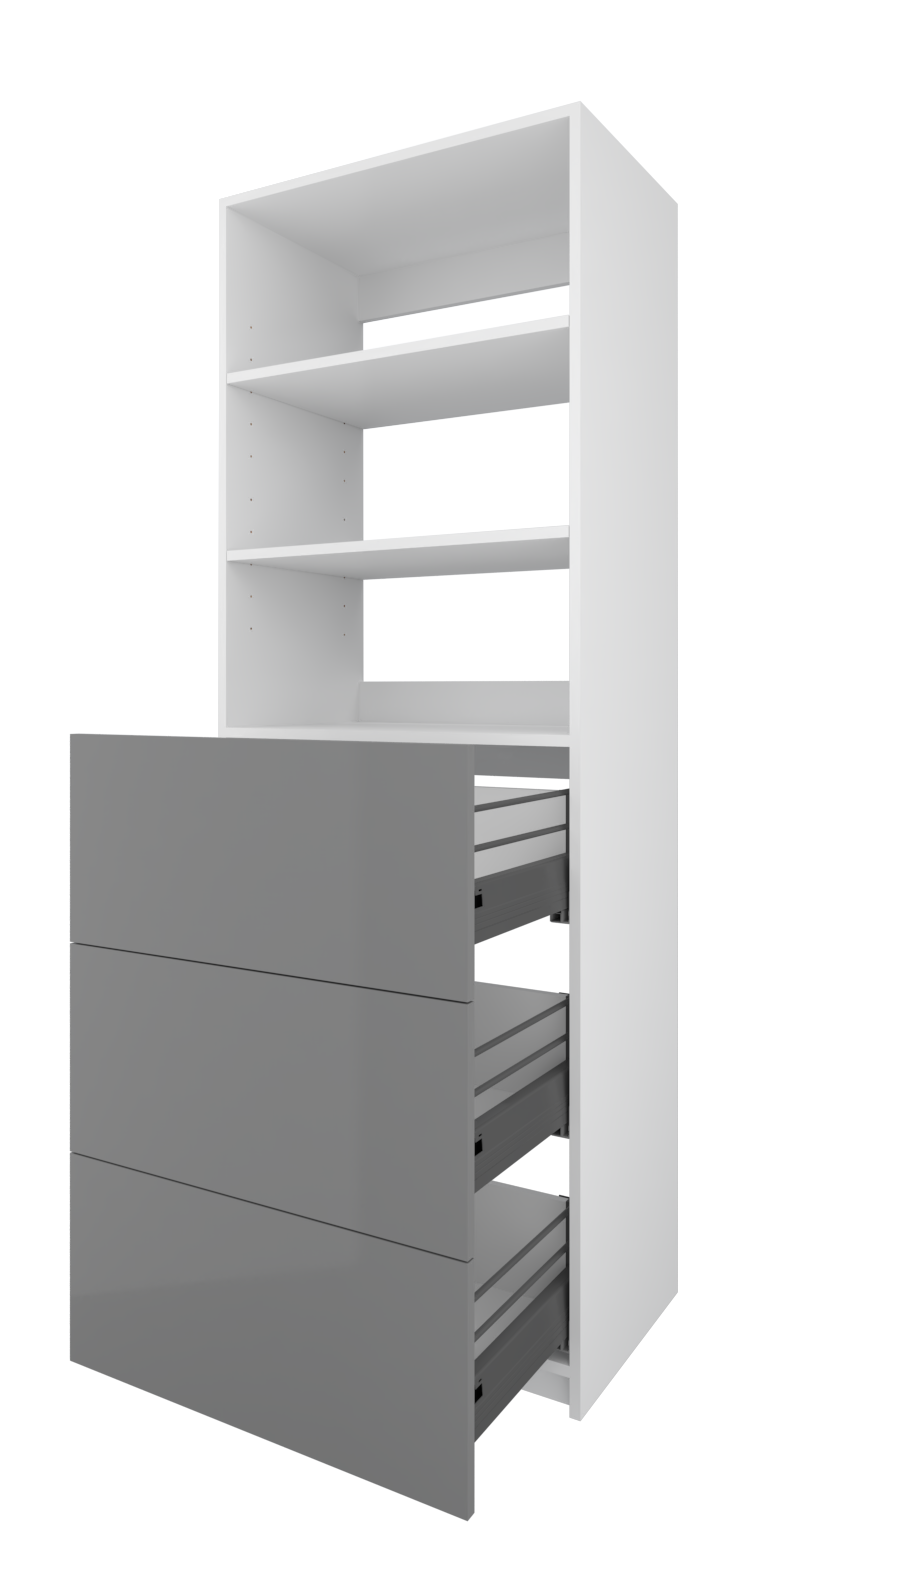 (3) Drawer + Adjustable Shelving Closet System